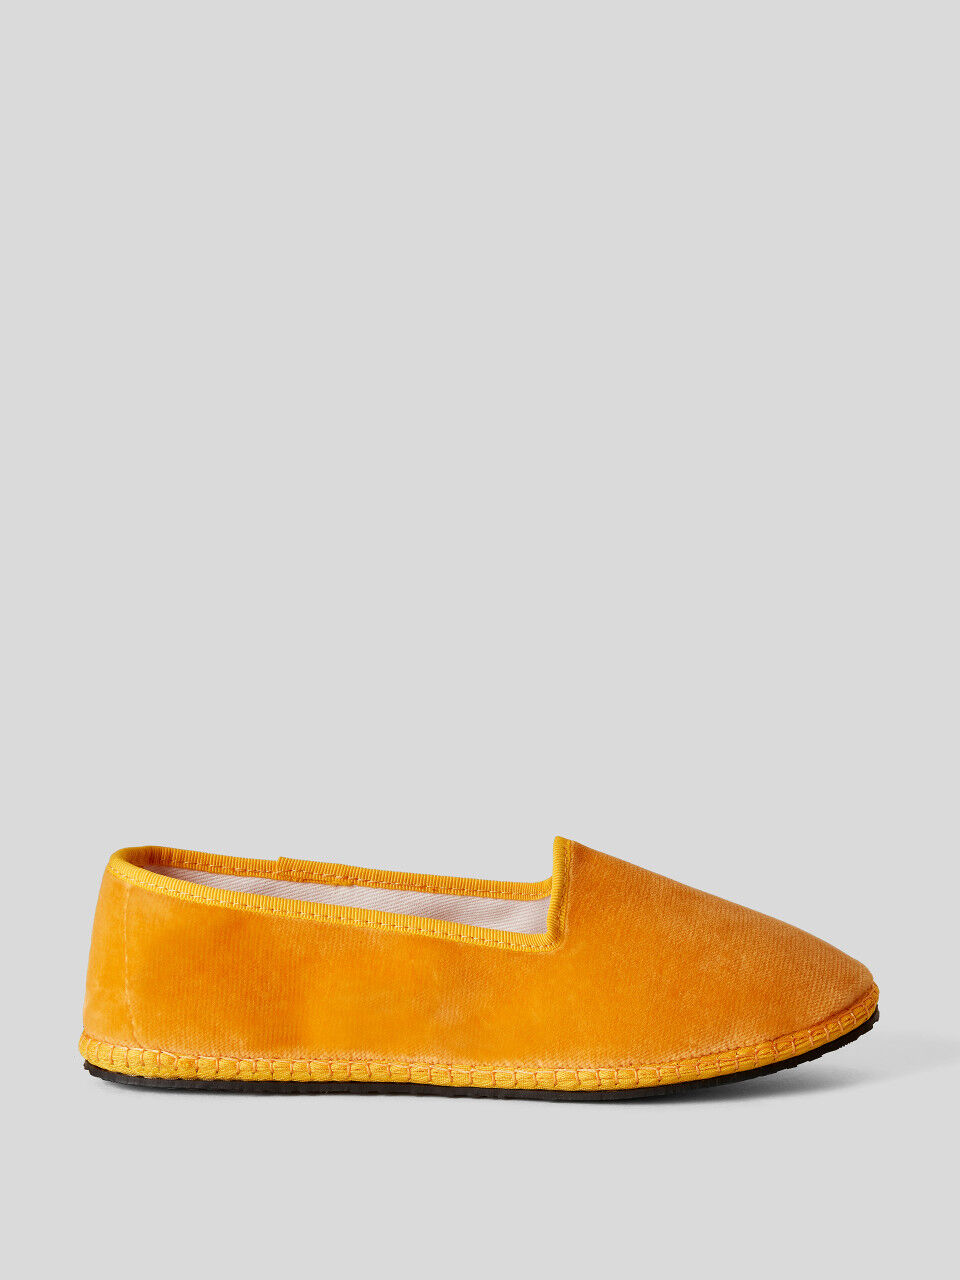 Παπούτσια Friulane κίτρινα από βελούδο